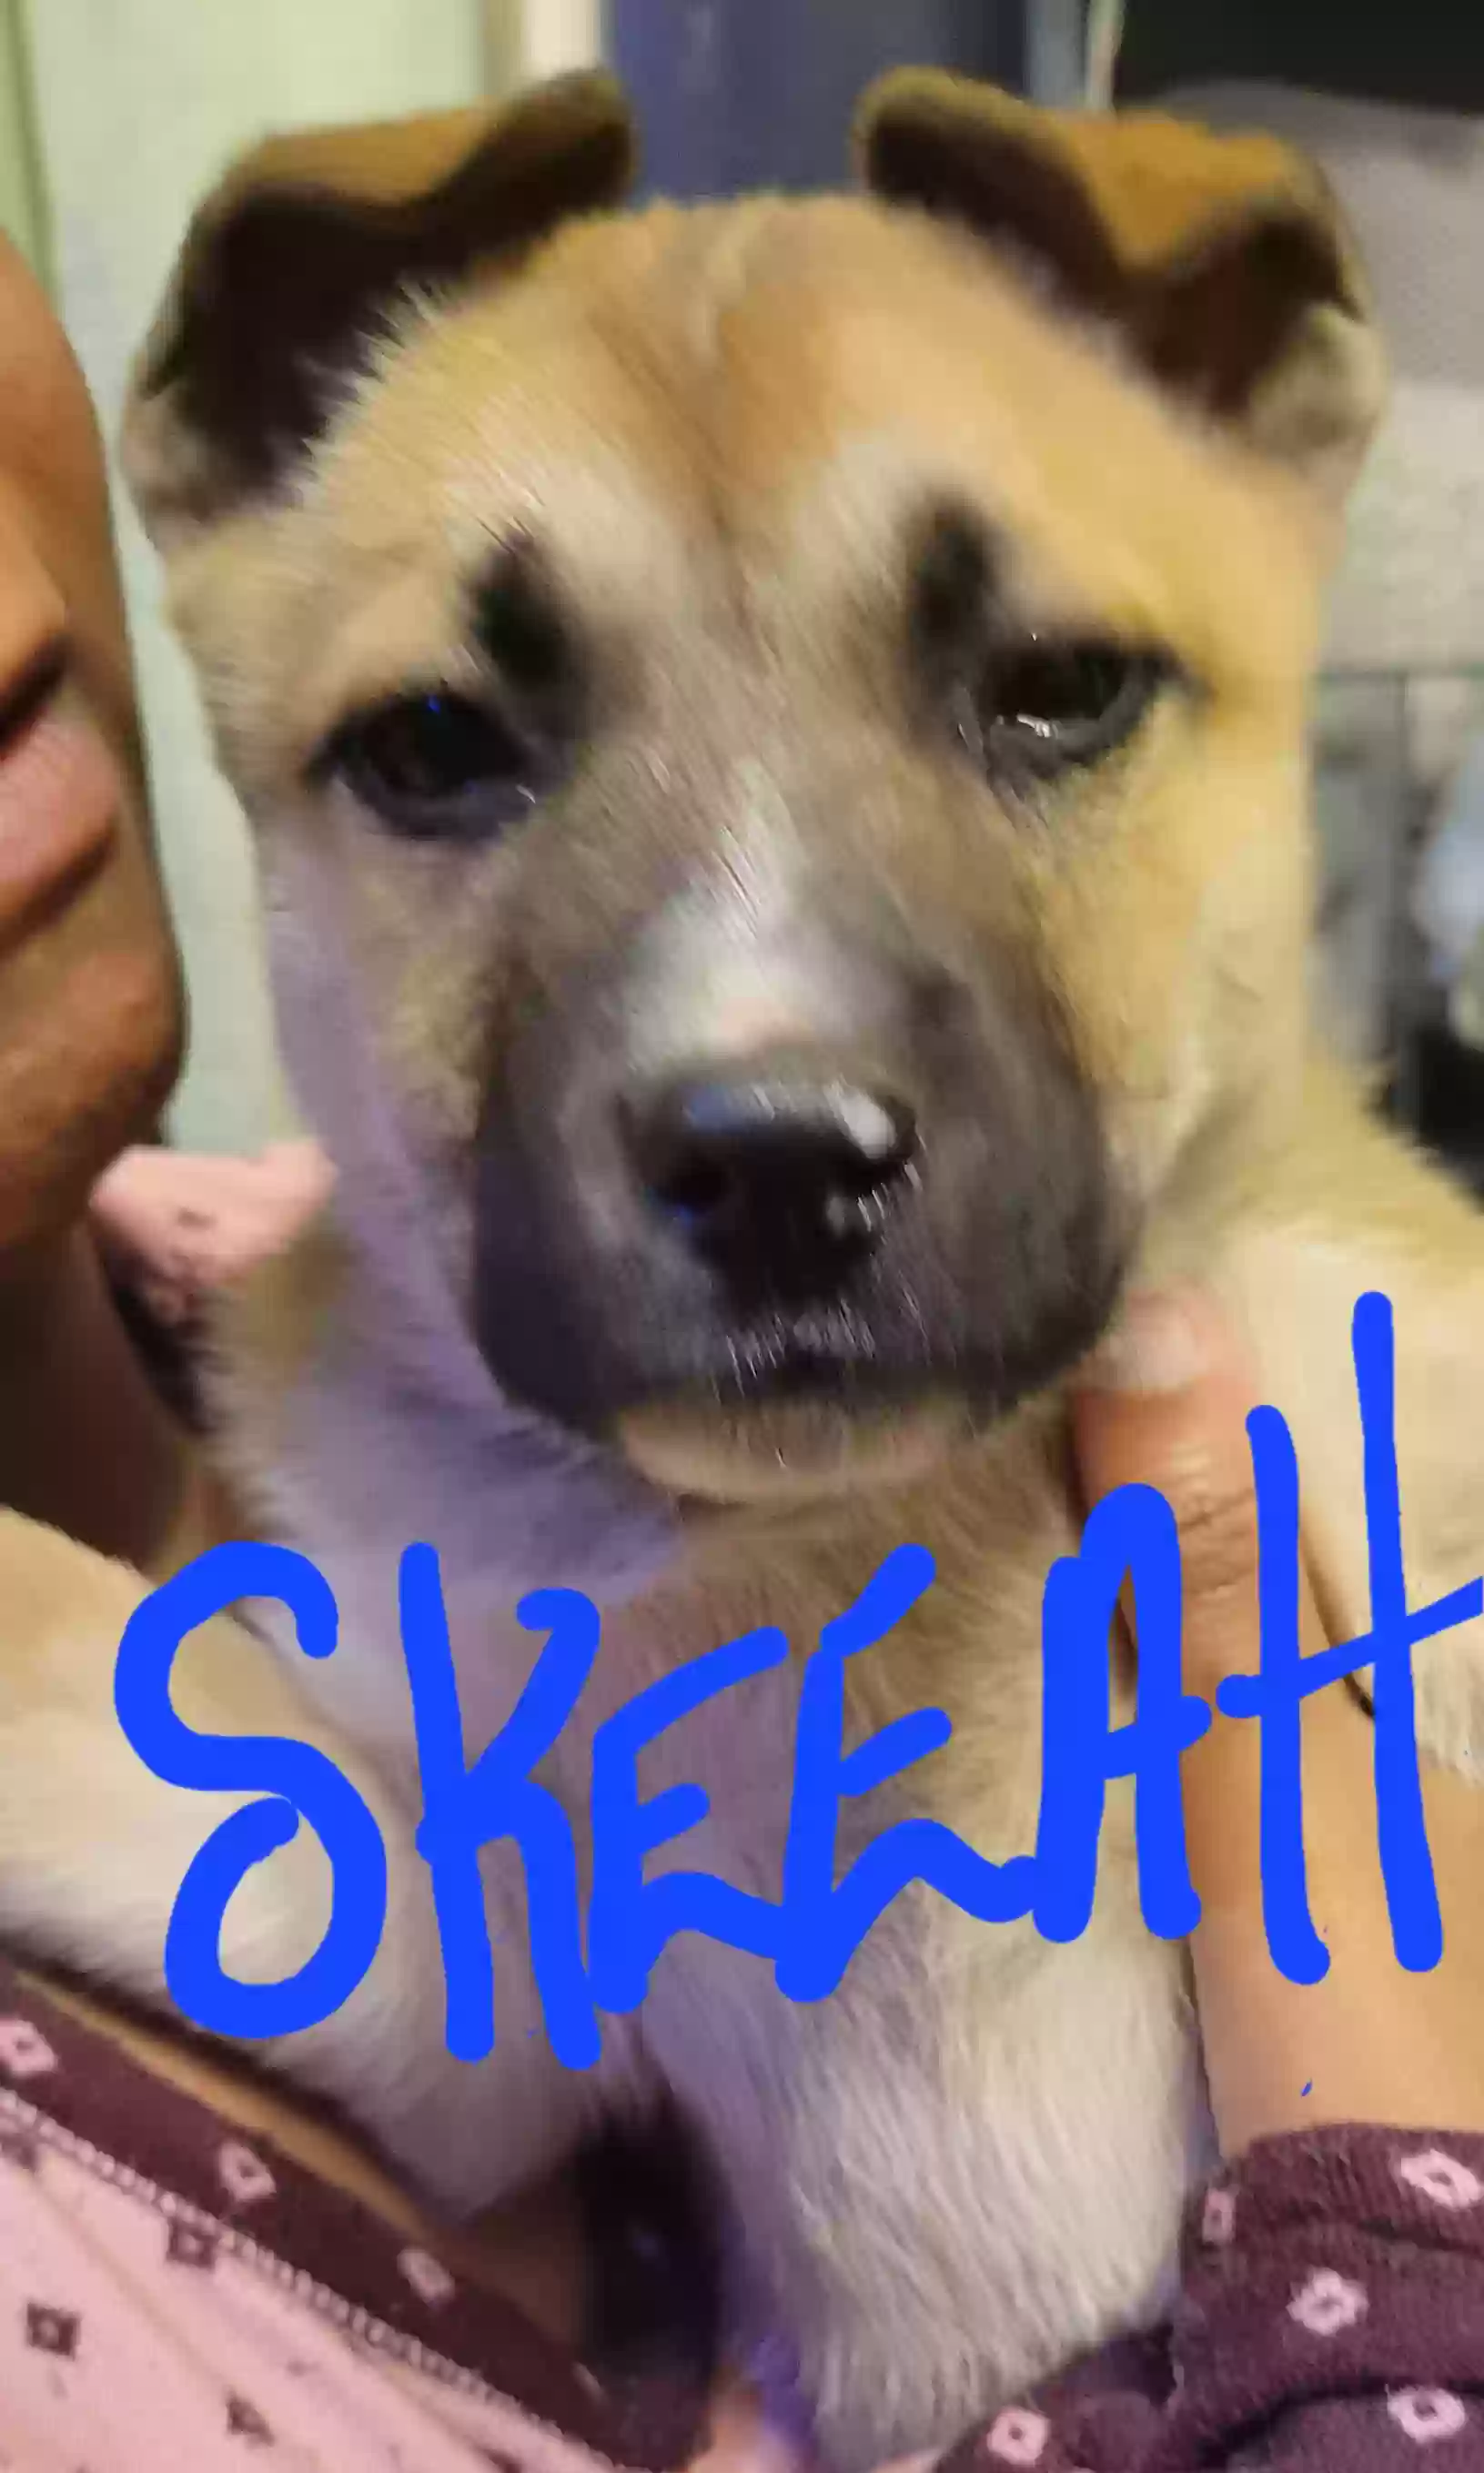 adoptable Dog in Wilson,NC named Skeeah